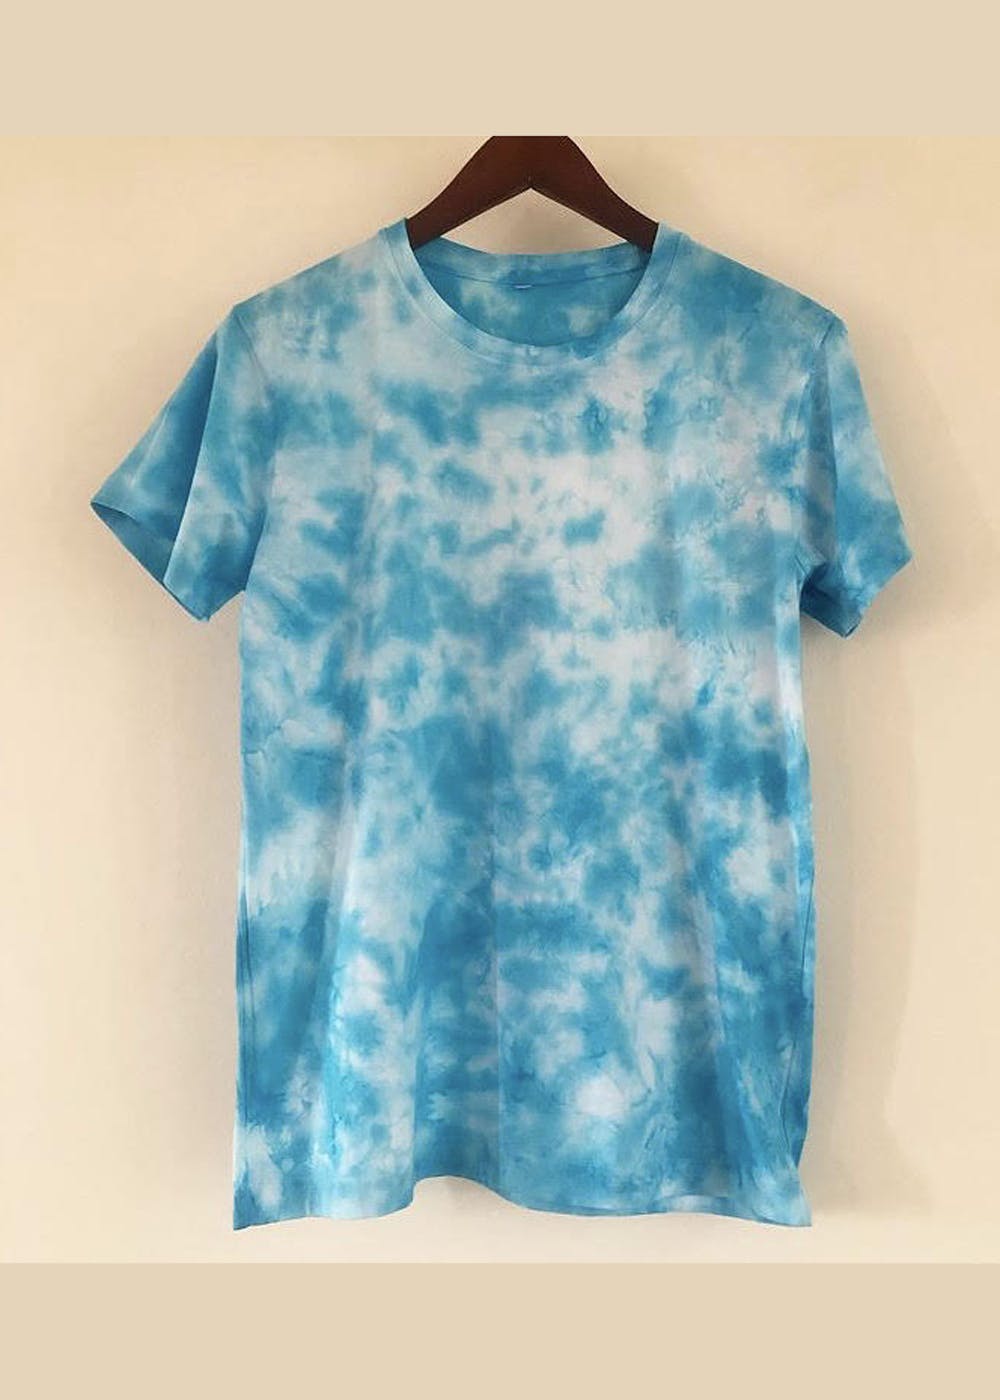 Get Light Blue Scrunch Tie-Dye T-Shirt at ₹ 420 | LBB Shop